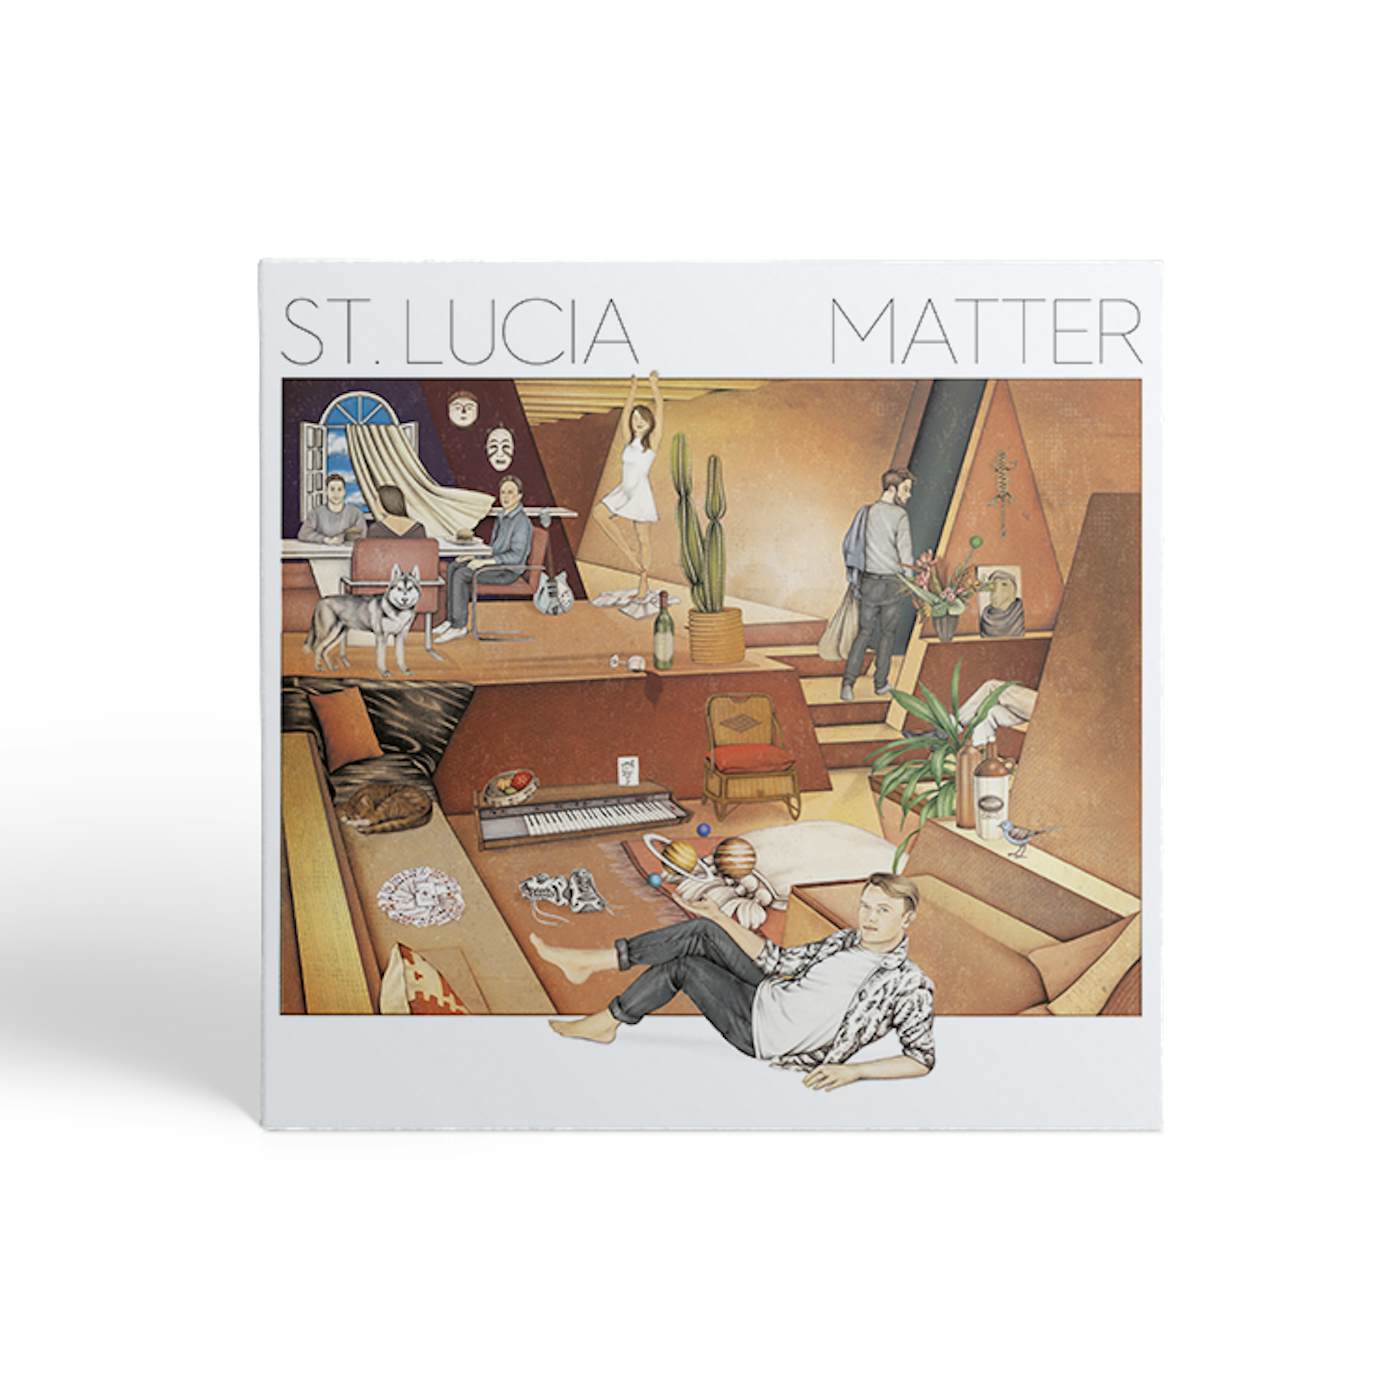 St. Lucia Matter CD